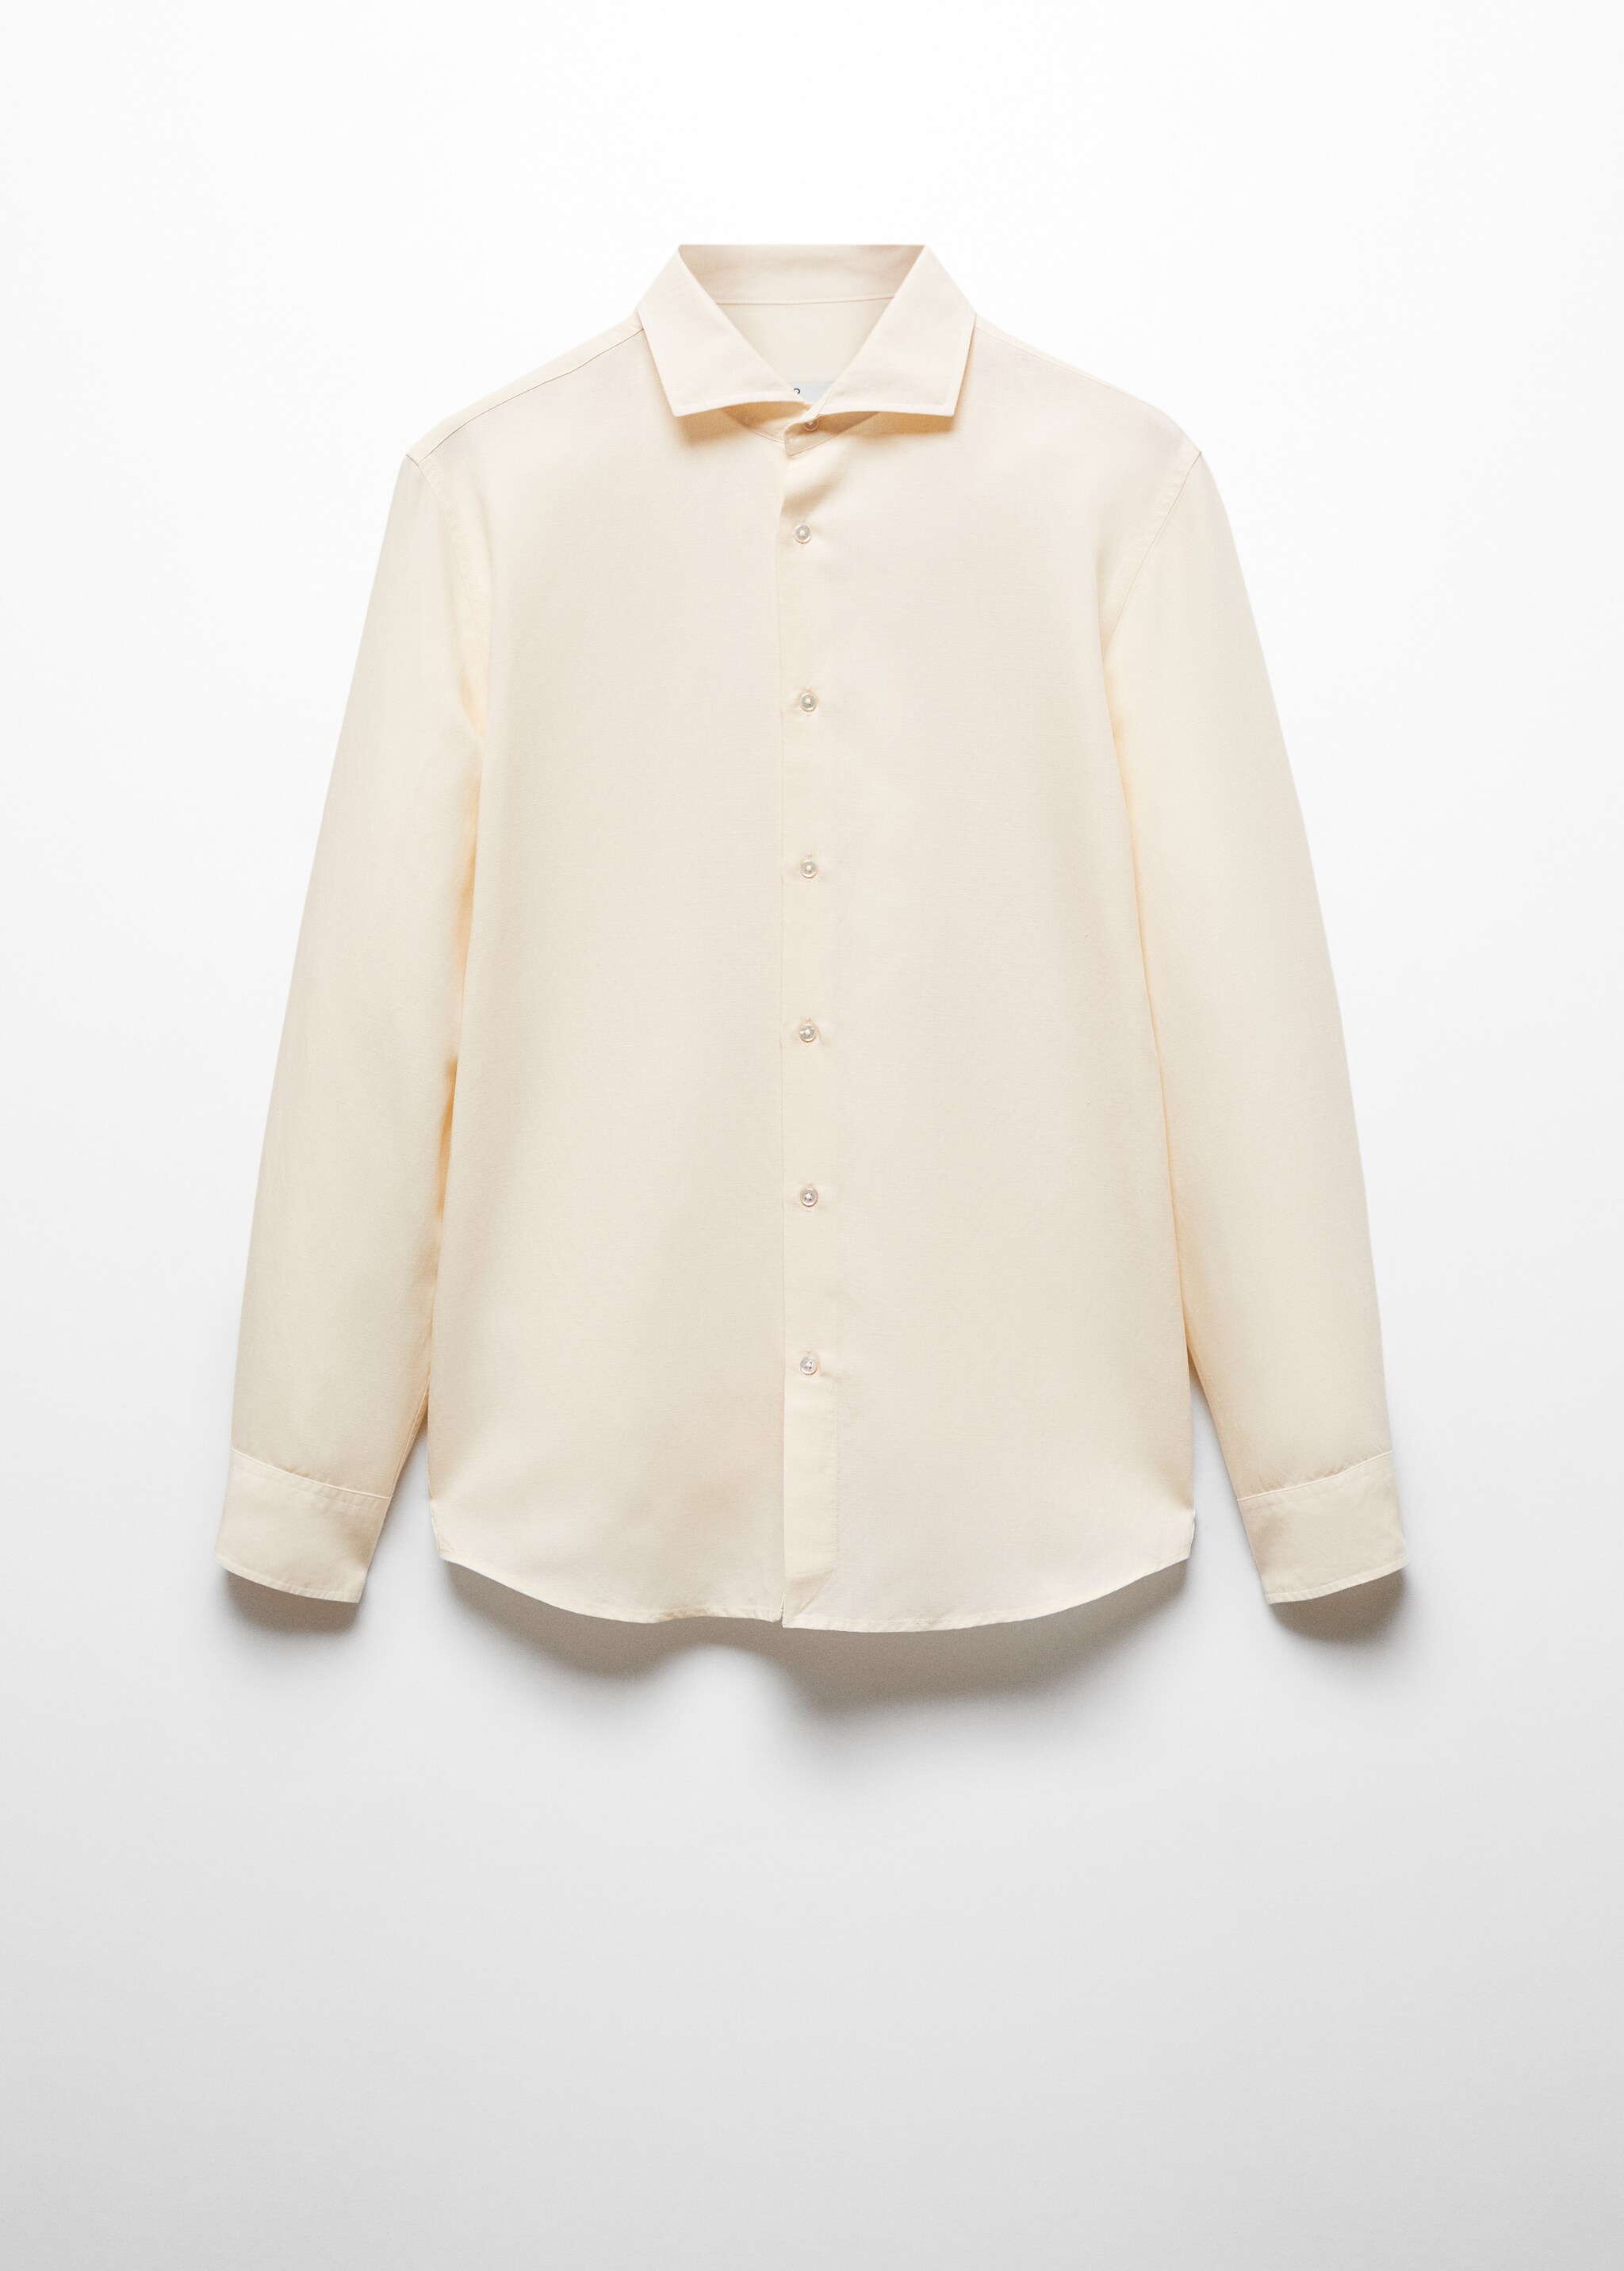 Camisa slim fit tencel lino - Artículo sin modelo